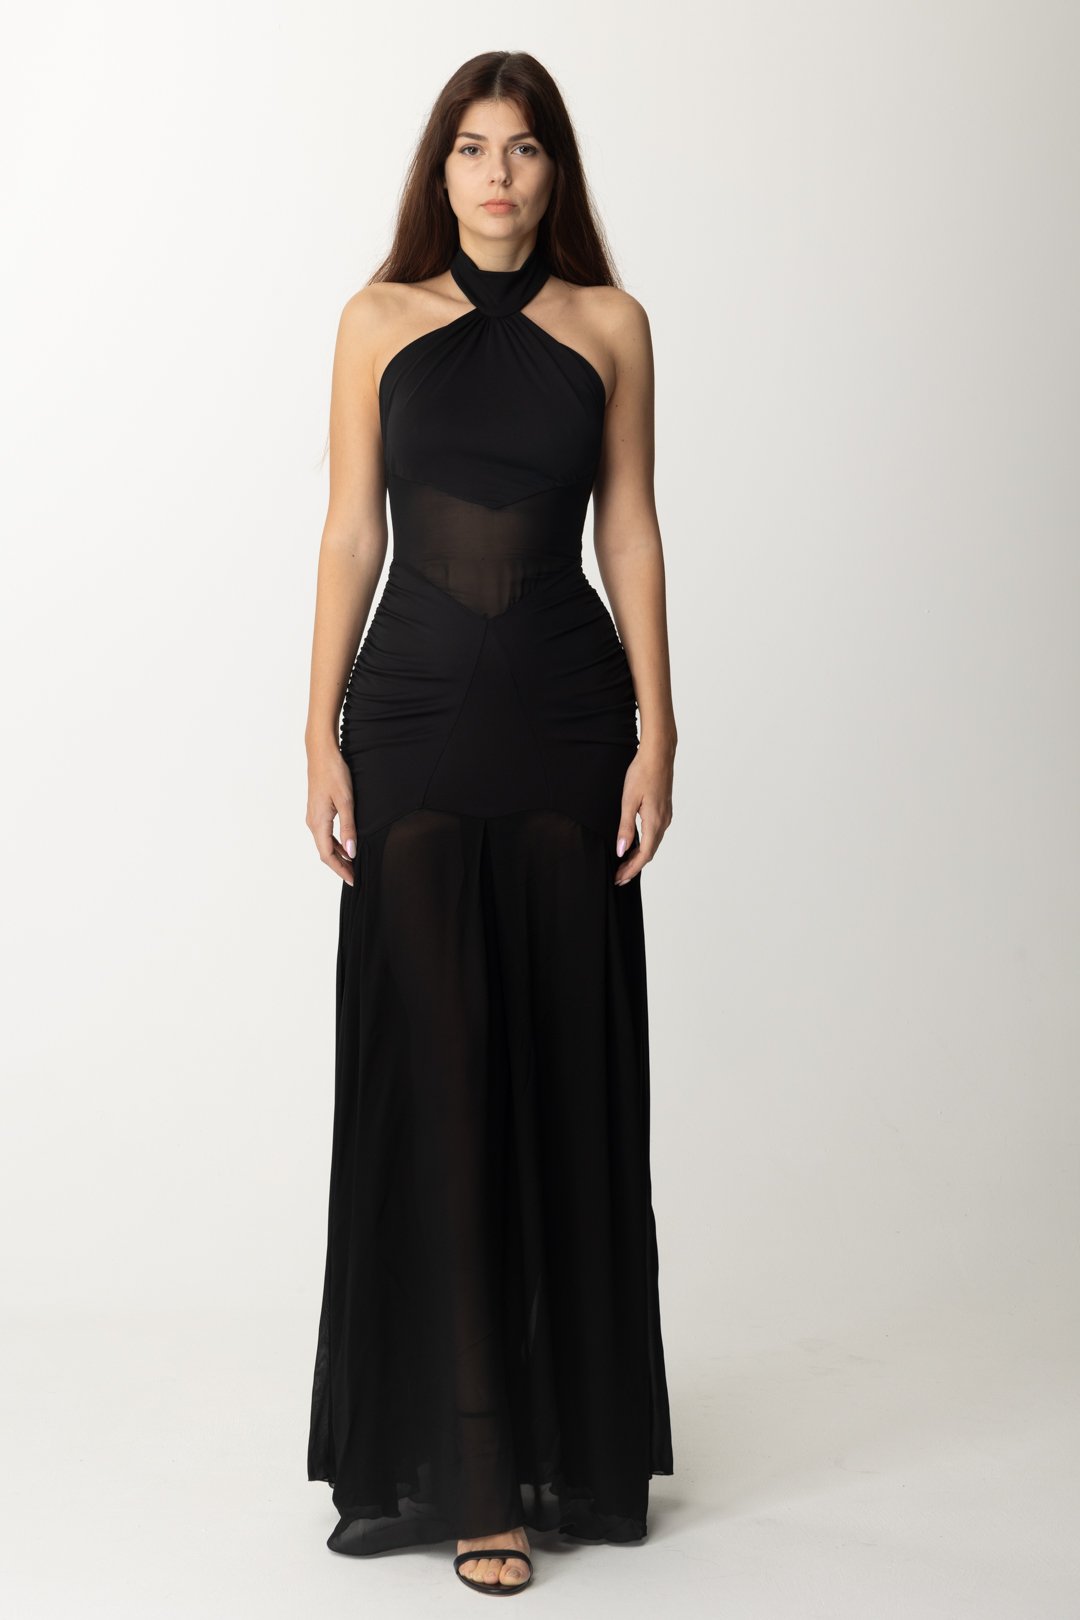 Vorschau: Aniye By Sienna langes Kleid mit Transparenzen Black